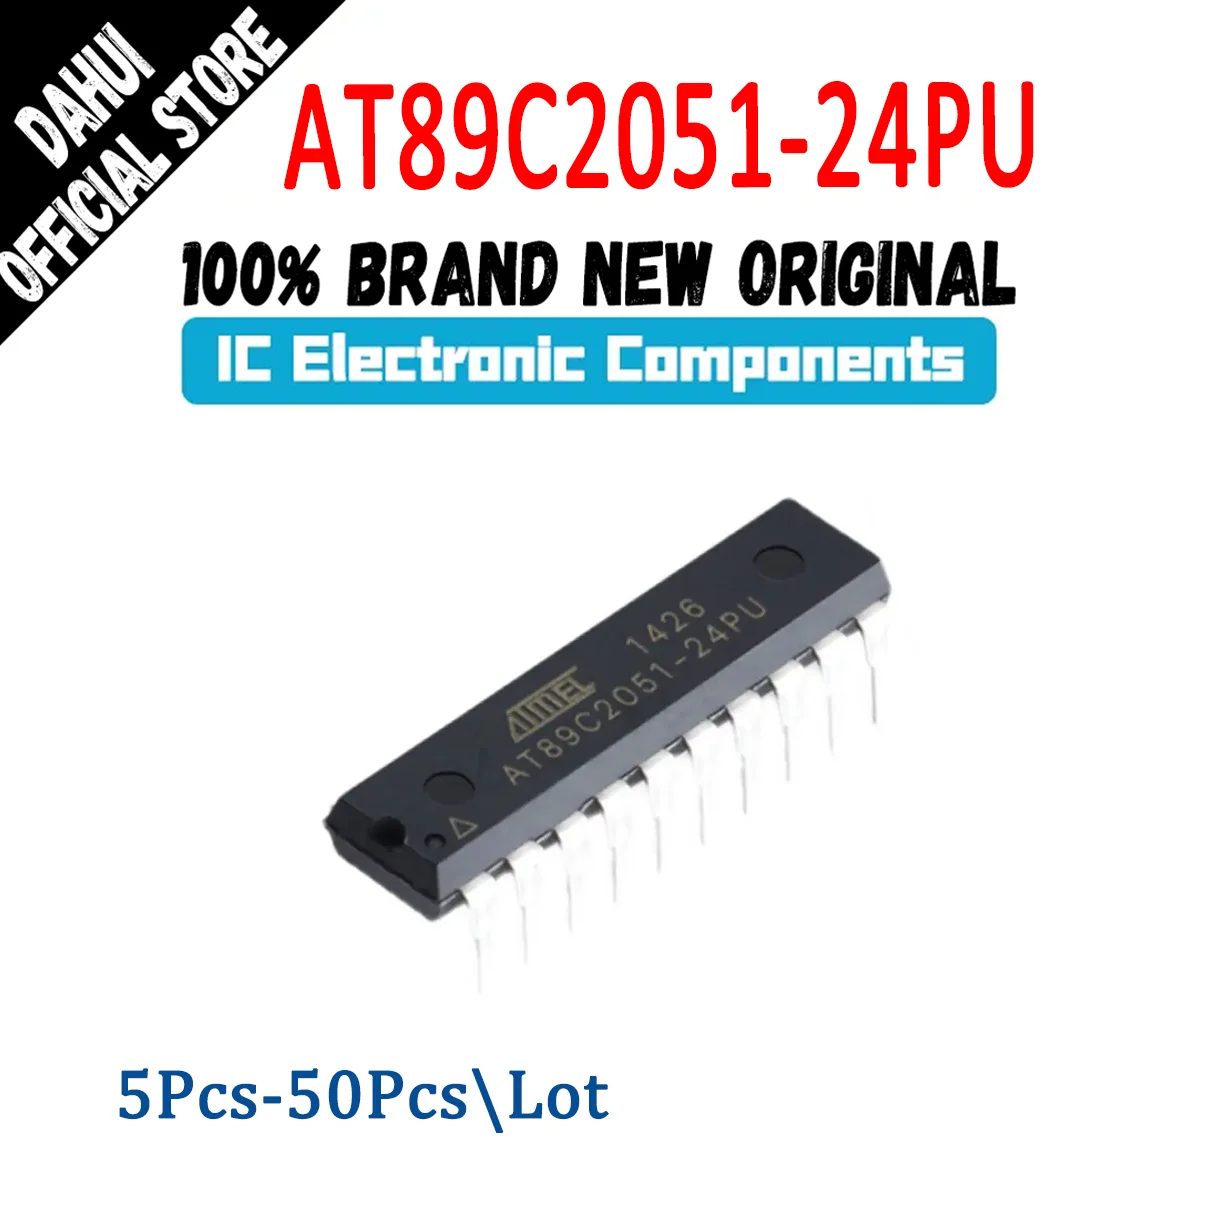 

AT89C2051-24PU AT89C2051-24 AT89C2051 AT89C AT89 AT IC MCU Chip DIP-20 In Stock 100% New Originl Original authentic